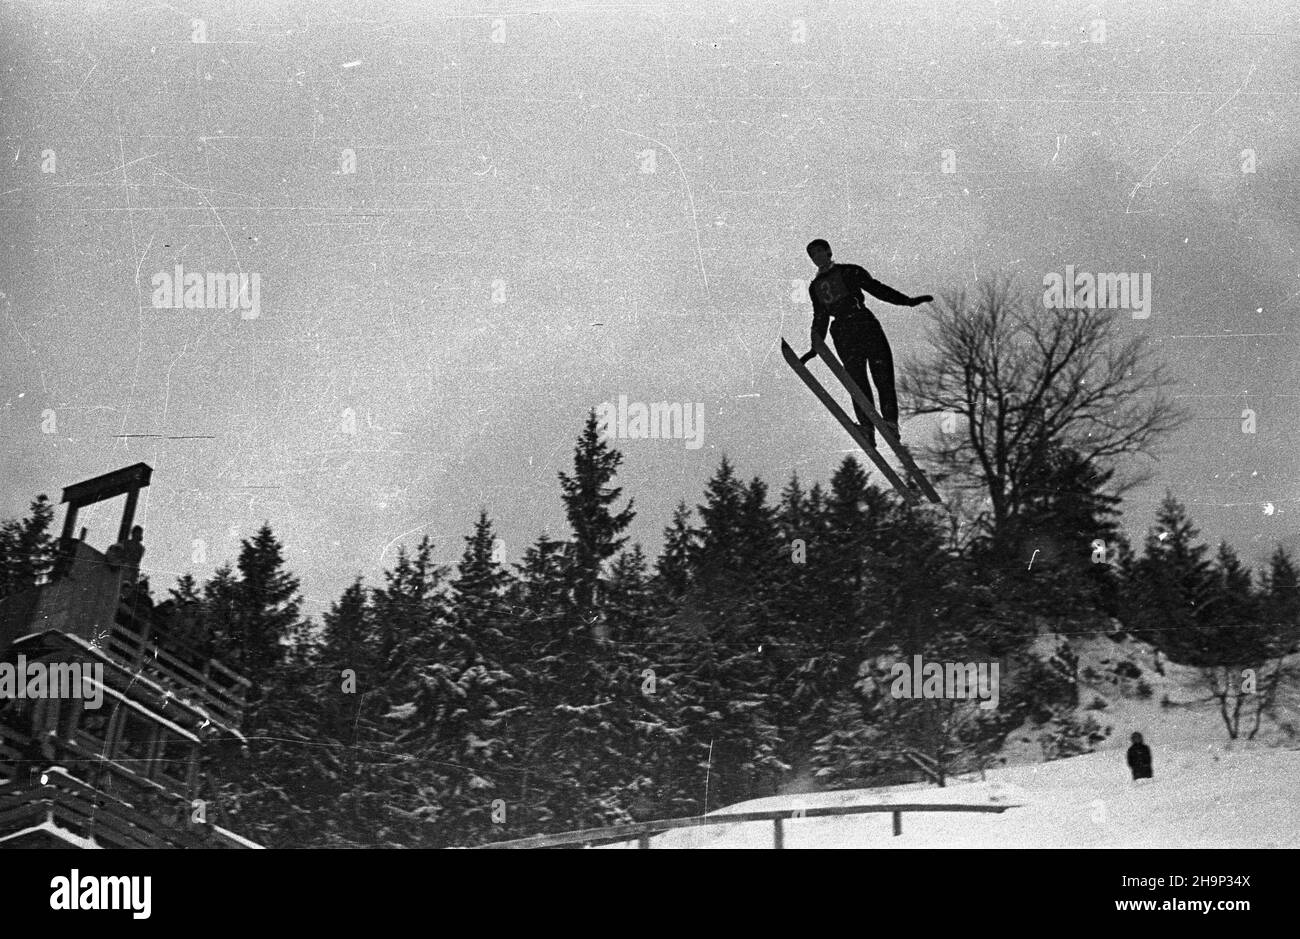 Zakopane, 1949-01-16. Memoria³ im. porucznika Wójcickiego w narciarstwie. Nz. konkurs skoków na Wielkiej Krokwi. bk  PAP      Zakopane, Jan. 16, 1949. The Lt. Wojcicki Memorial Ski Event. Pictured: the ski jump competition at the Wielka Krokiew ski jump.  bk  PAP Stock Photo